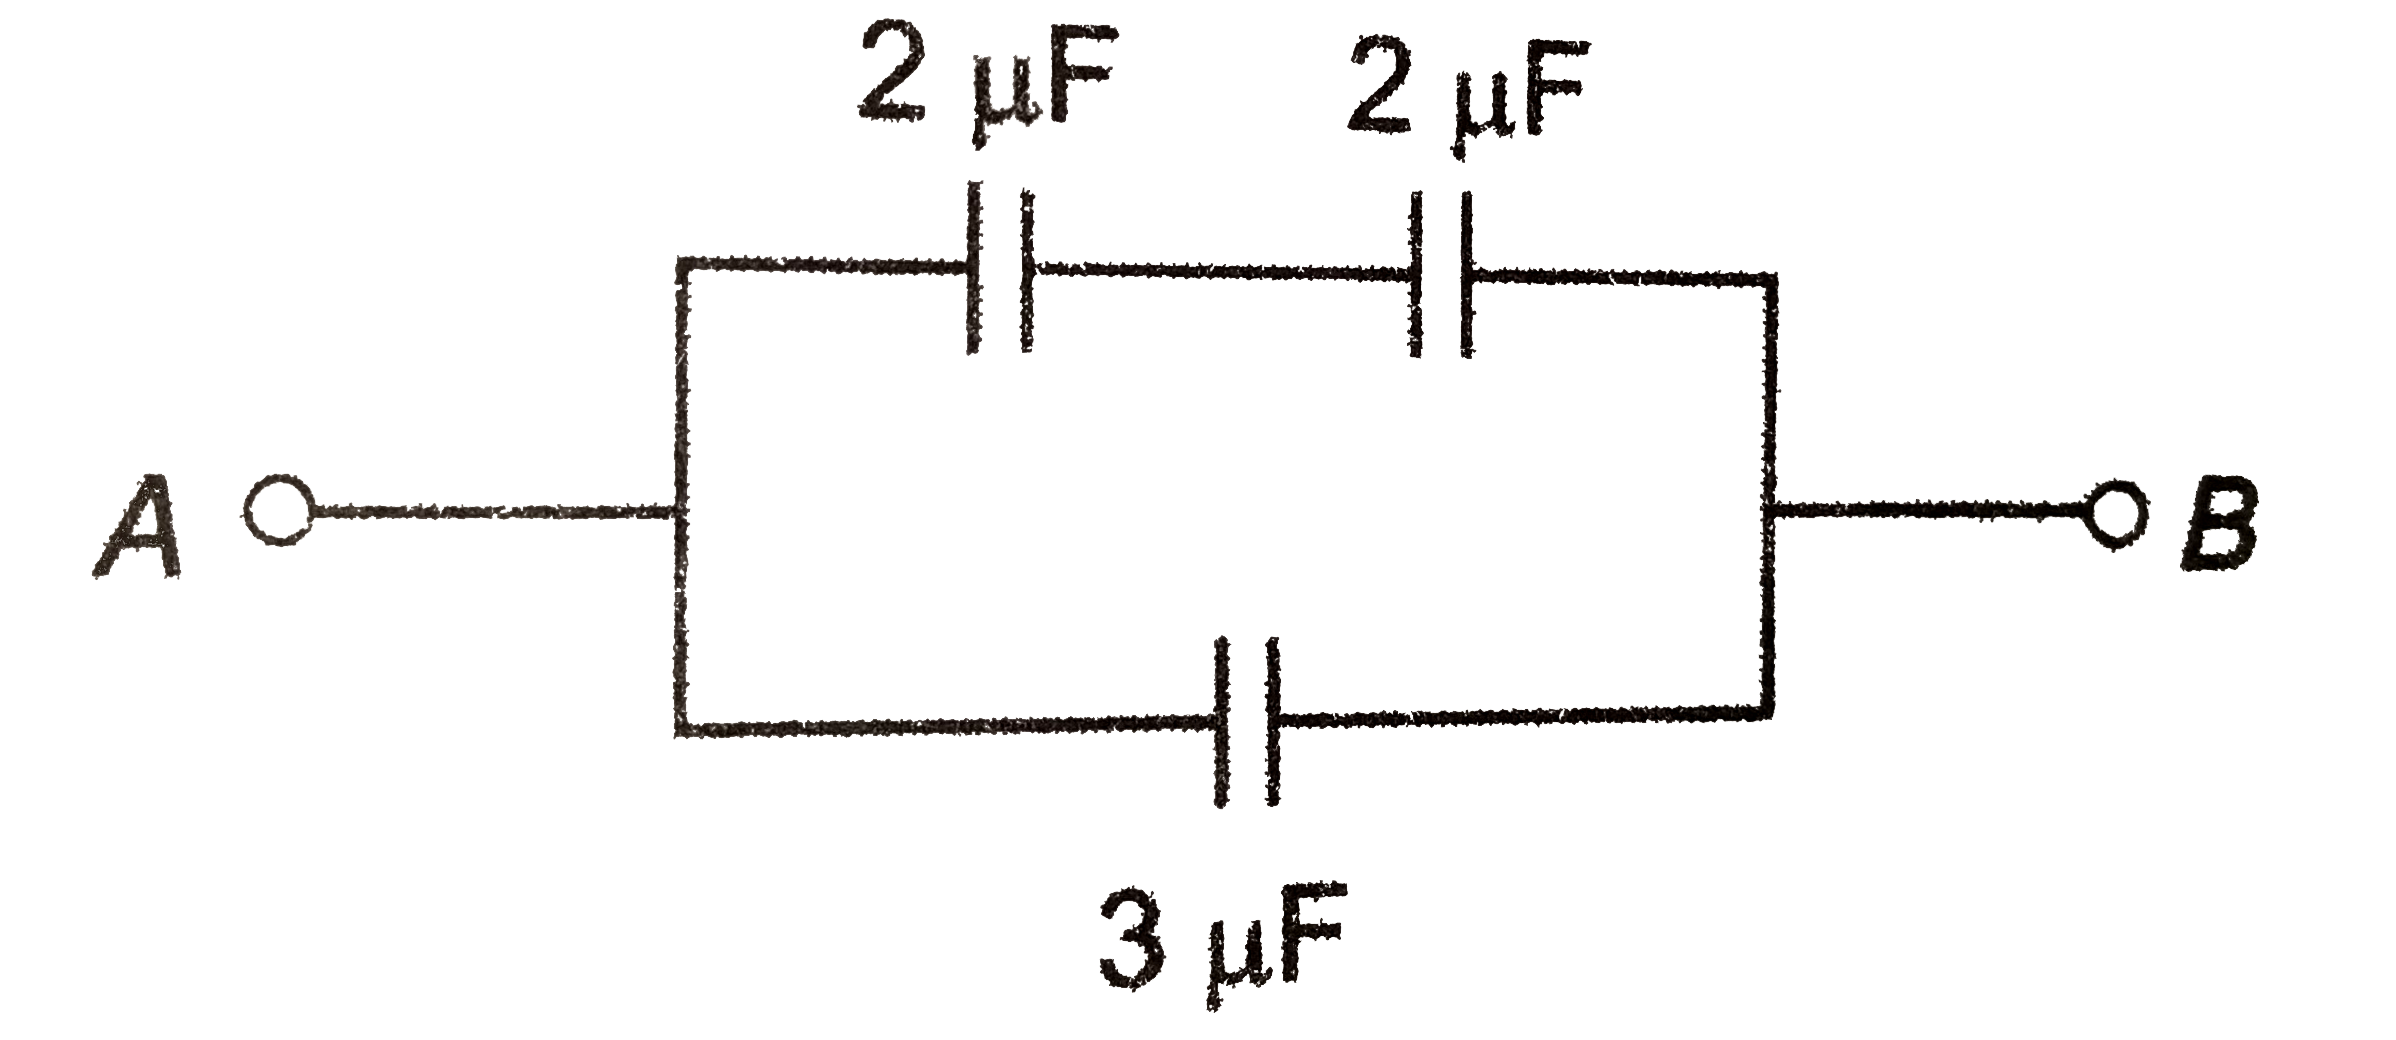 चित्र में बिंदुओं A or B के बीच तुल्य धारिता हैं-